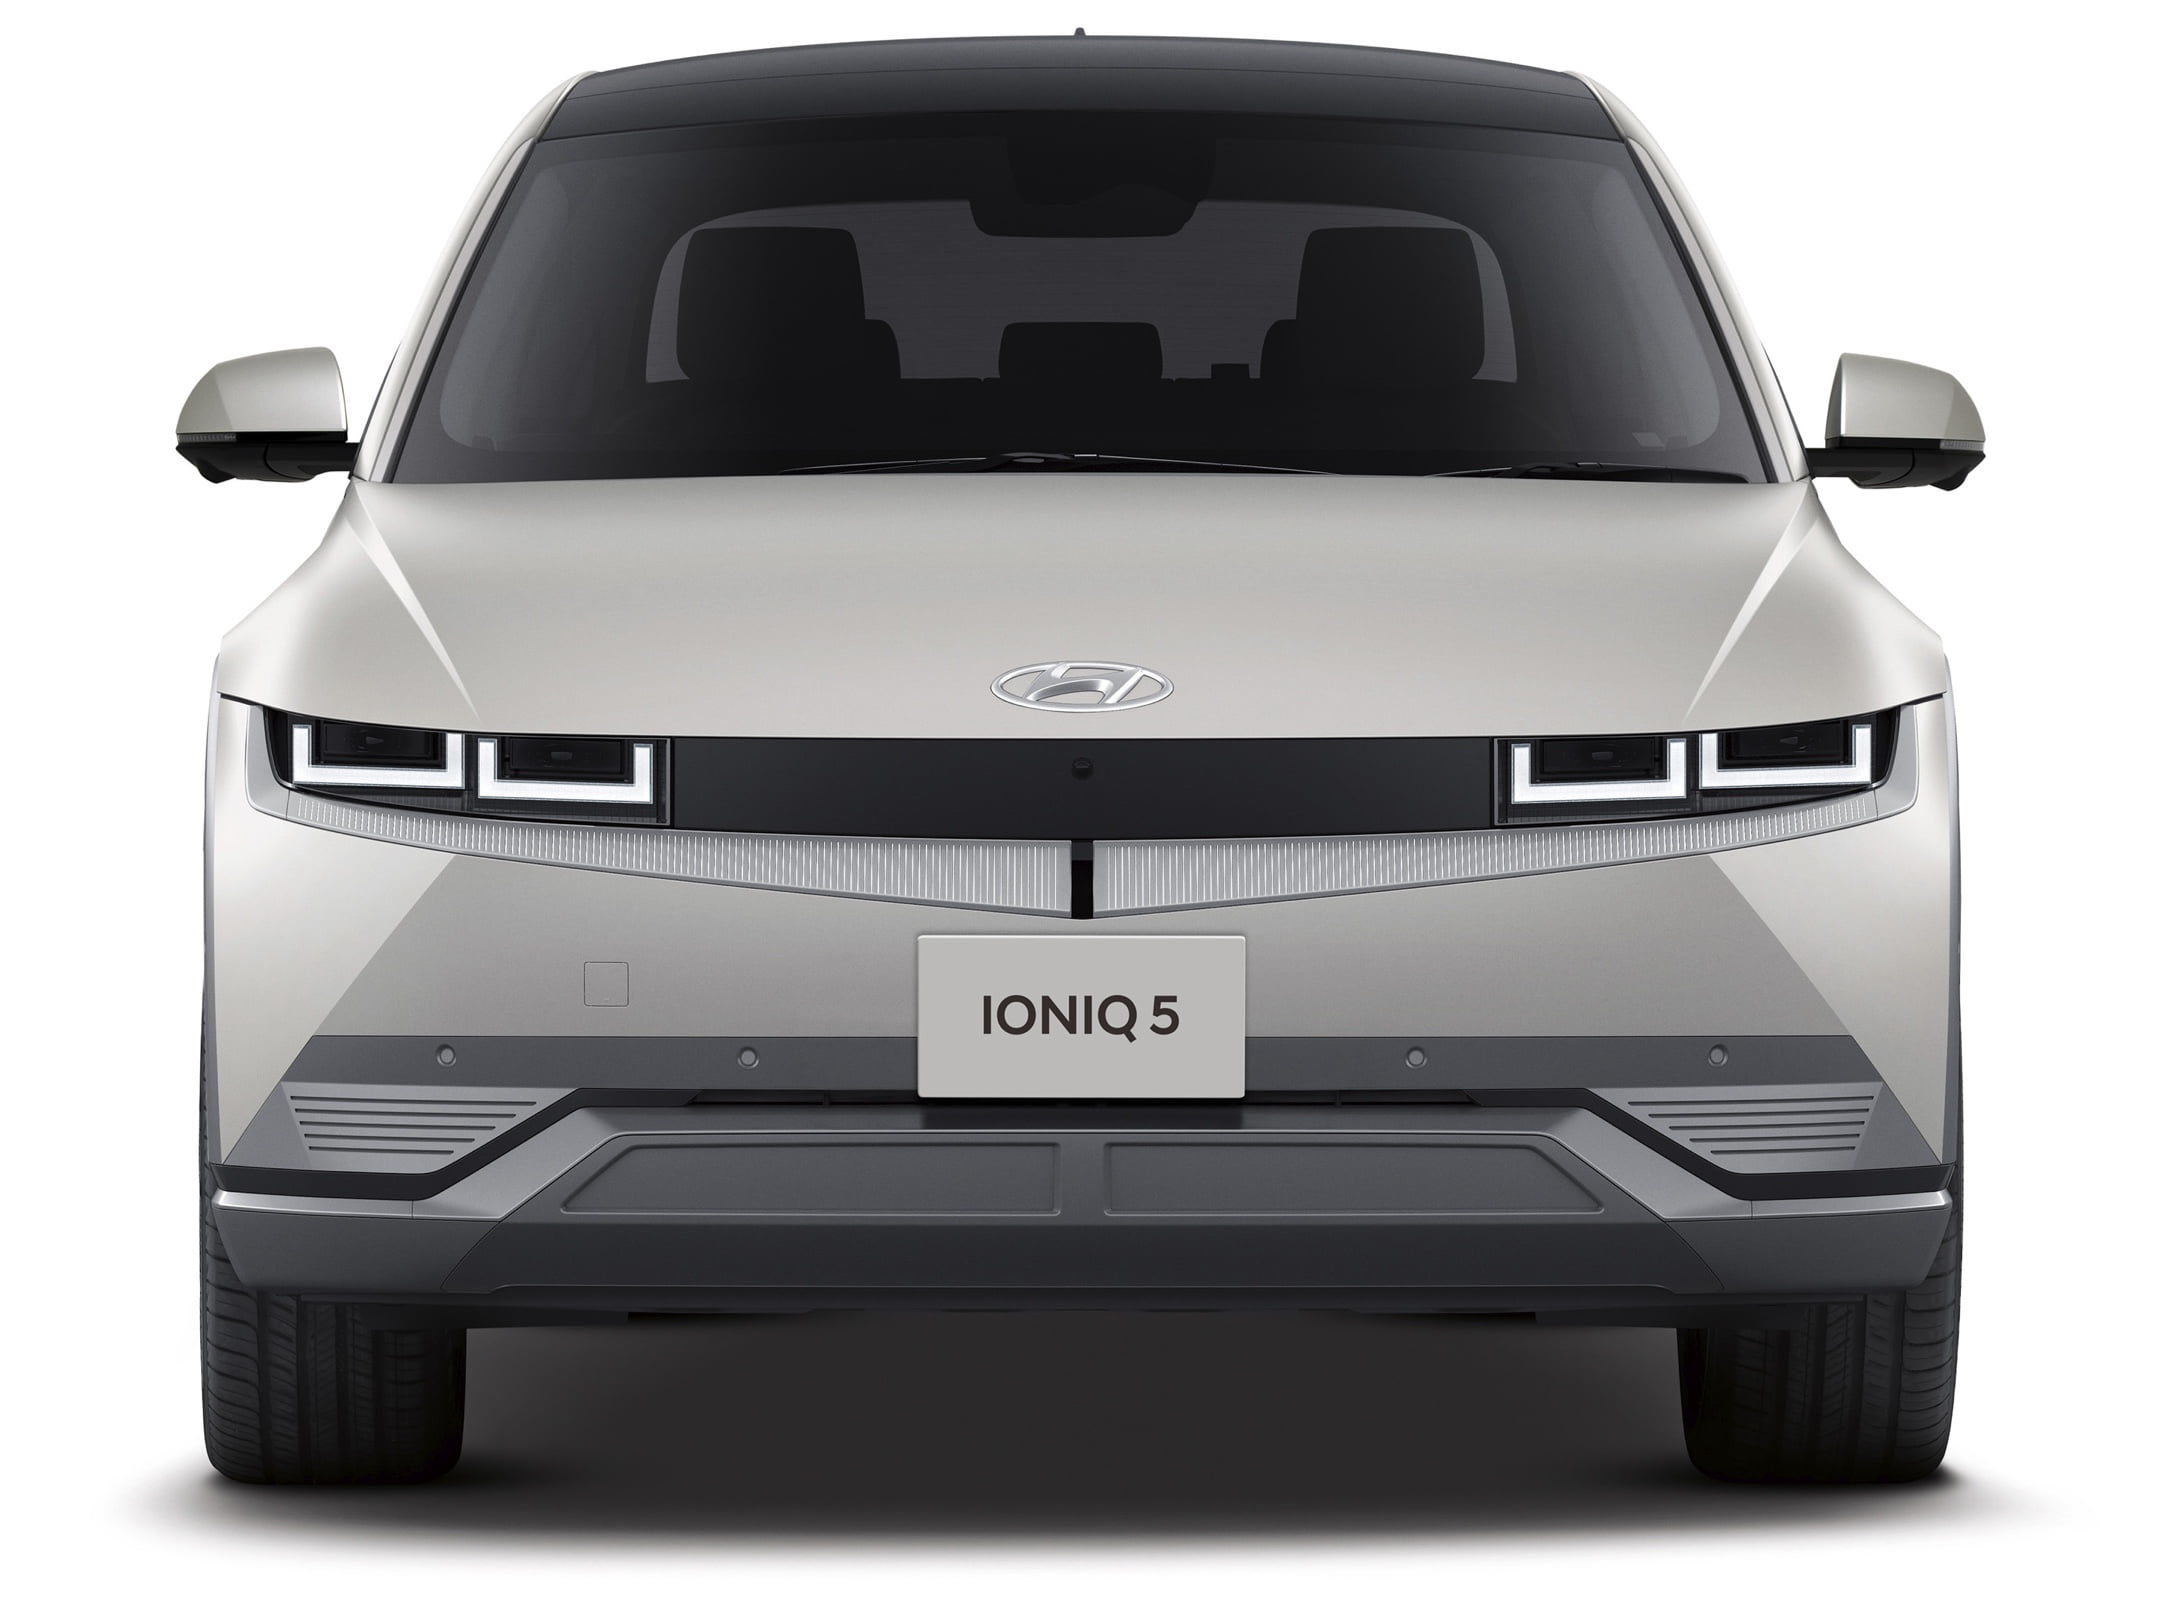 IONIQ 5 (アイオニック 5) 電気自動車 EV デザイン - Hyundai Mobility Japan (ヒョンデモビリティジャパン)